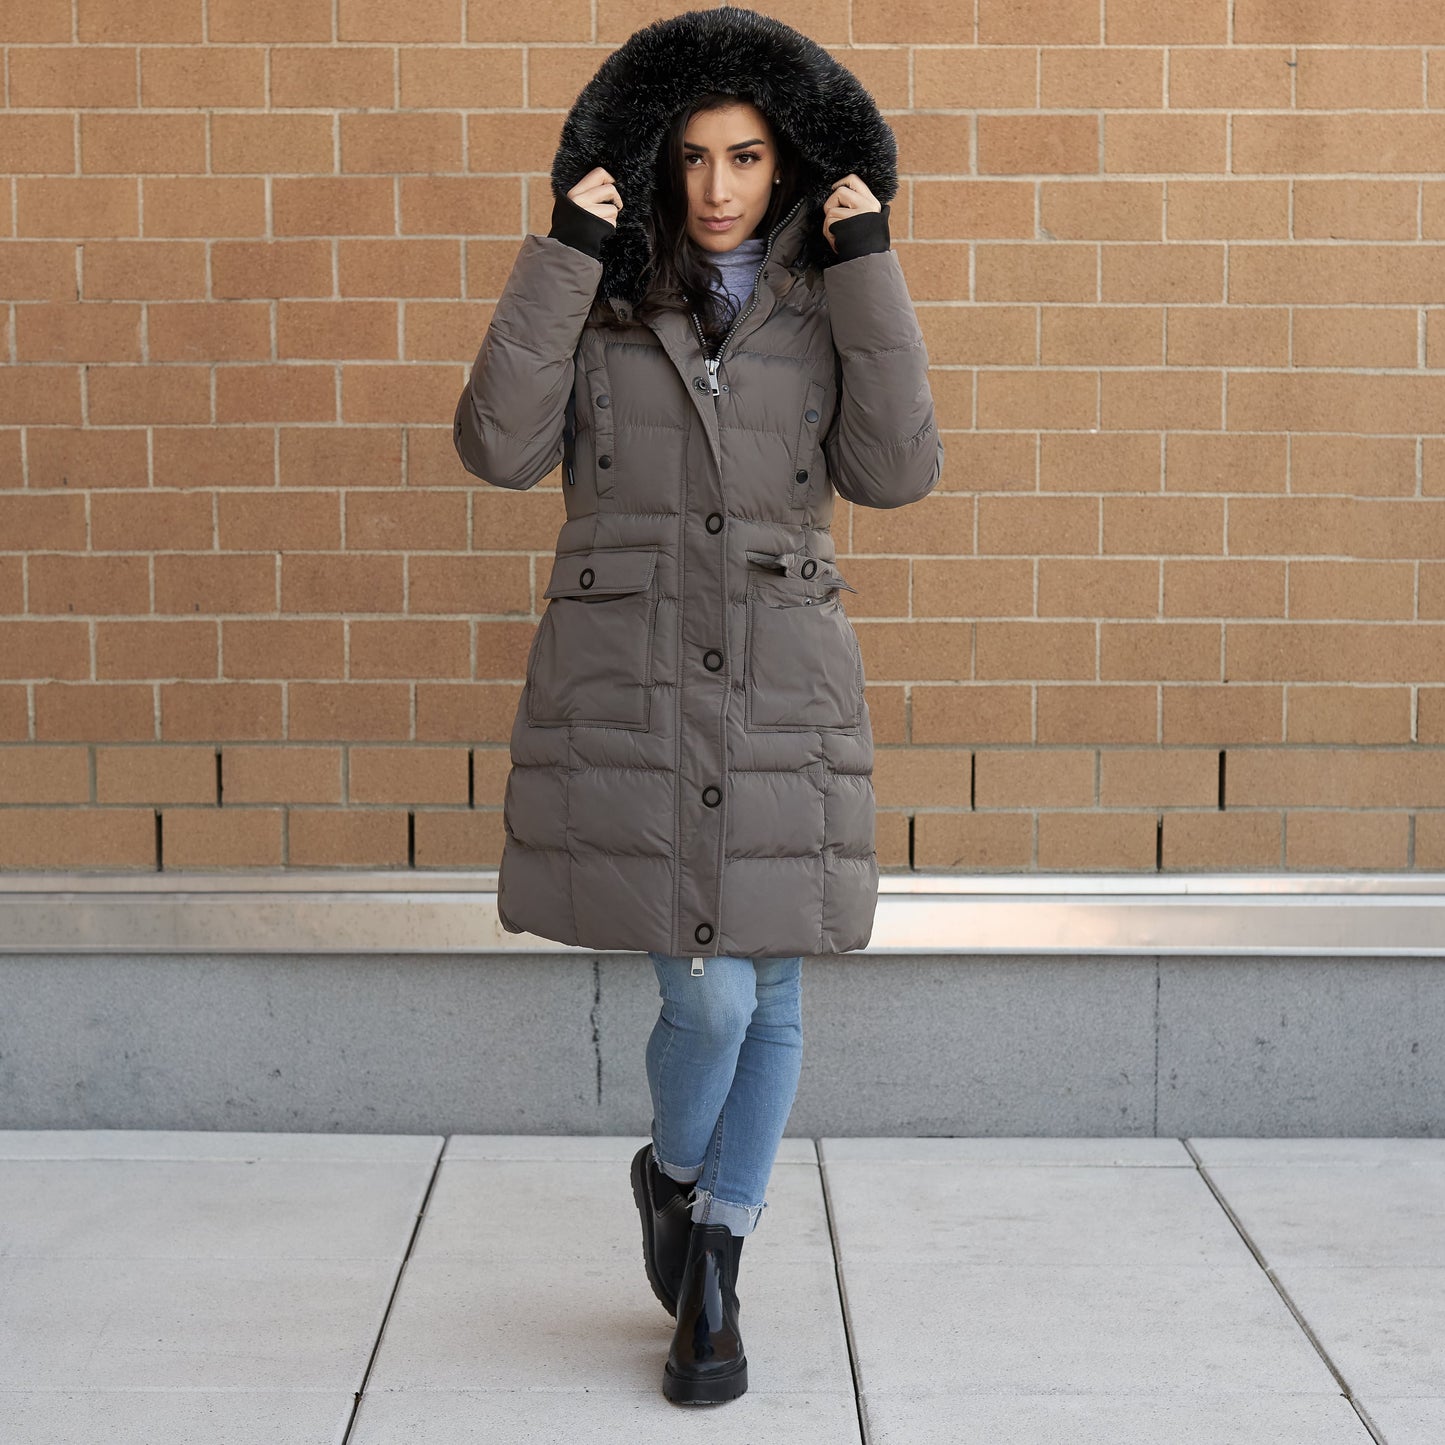 Elora Women's Winter Coat - Mid-length Cargo Coat with Detachable Hood